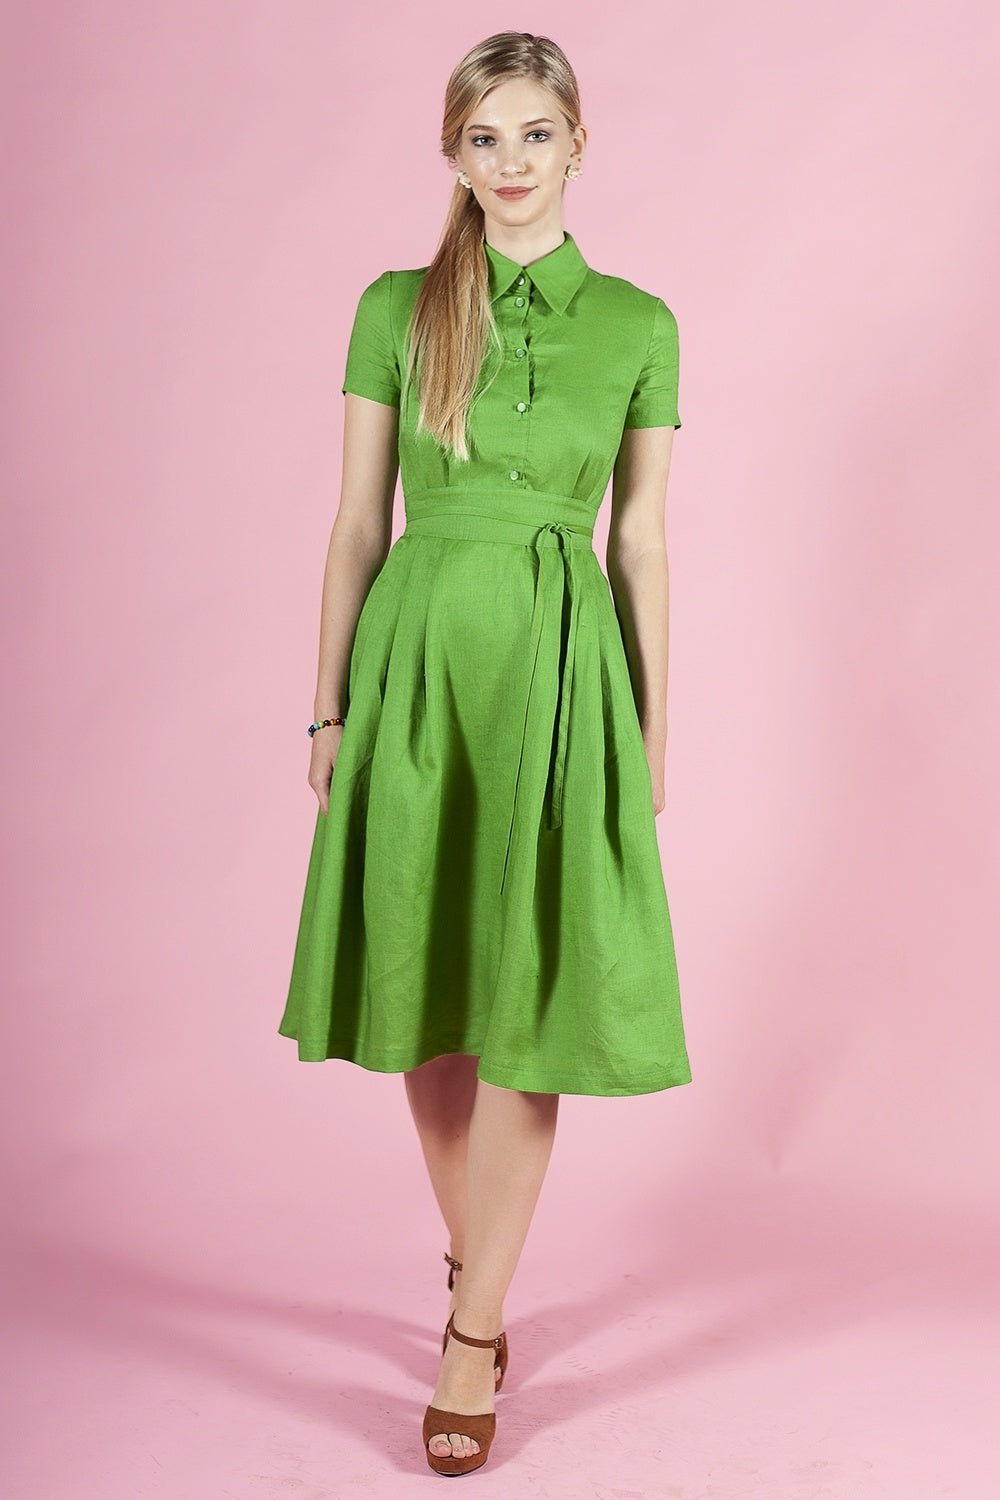 Grünes Kleid mit Knöpfen